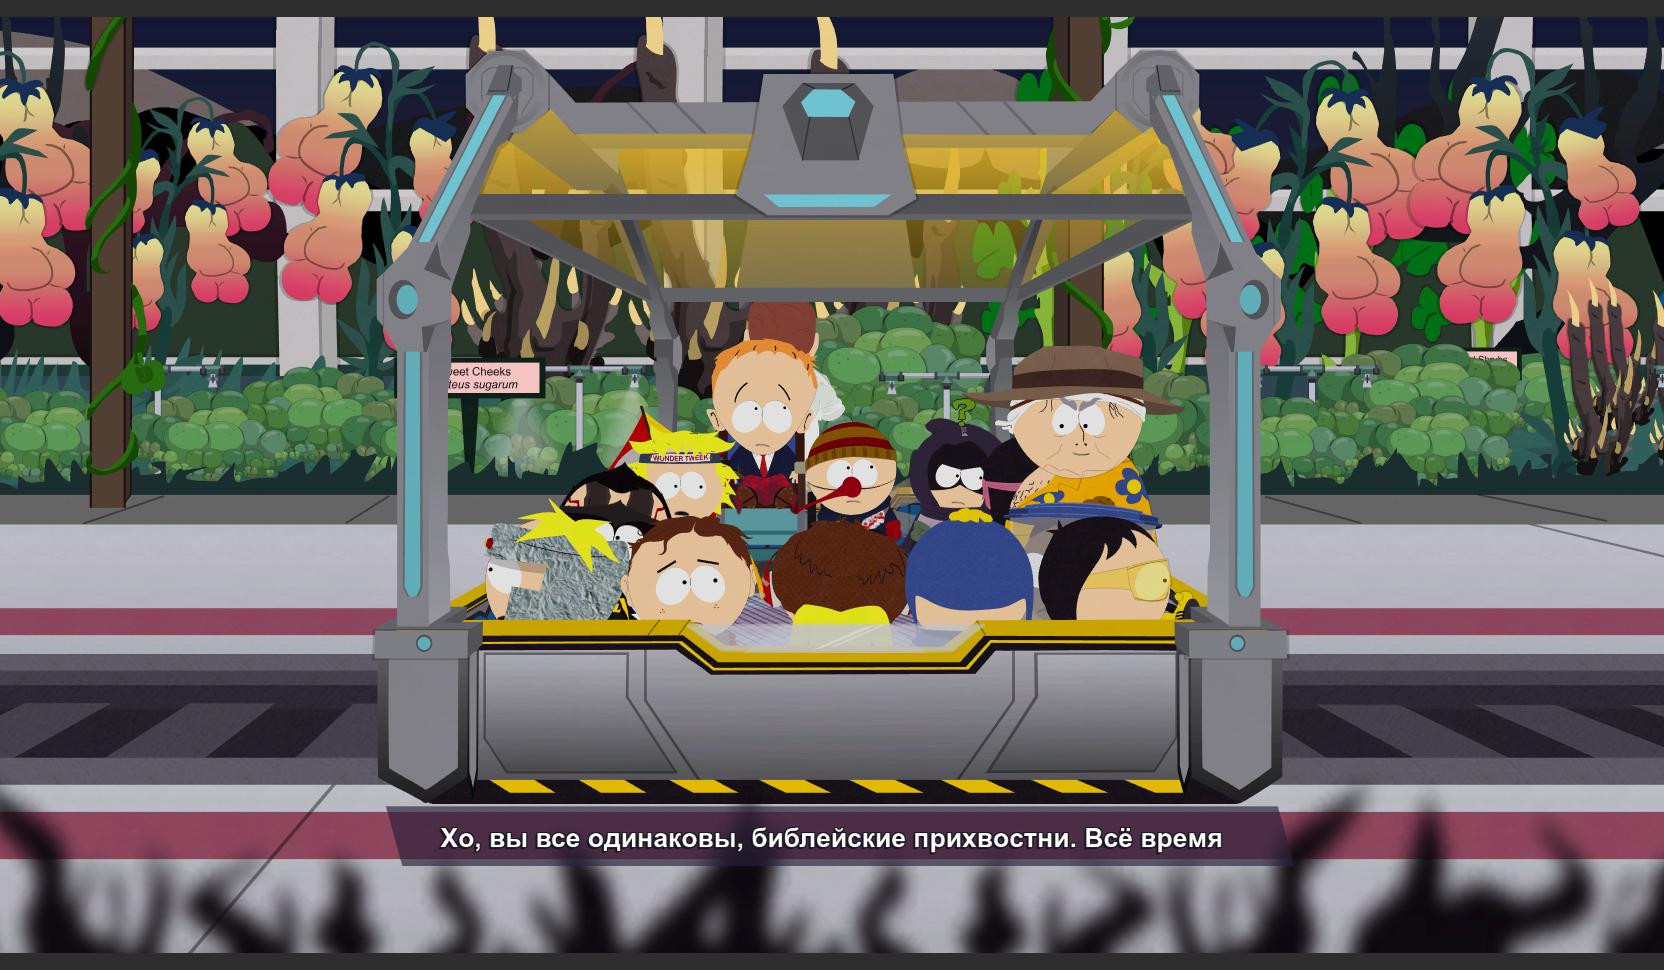 Игра южный парк 2. South Park the Fractured but whole Скриншоты. Каса Бонита Южный парк. Цензура в Южном парке в игре. Южный парк 13 карт.